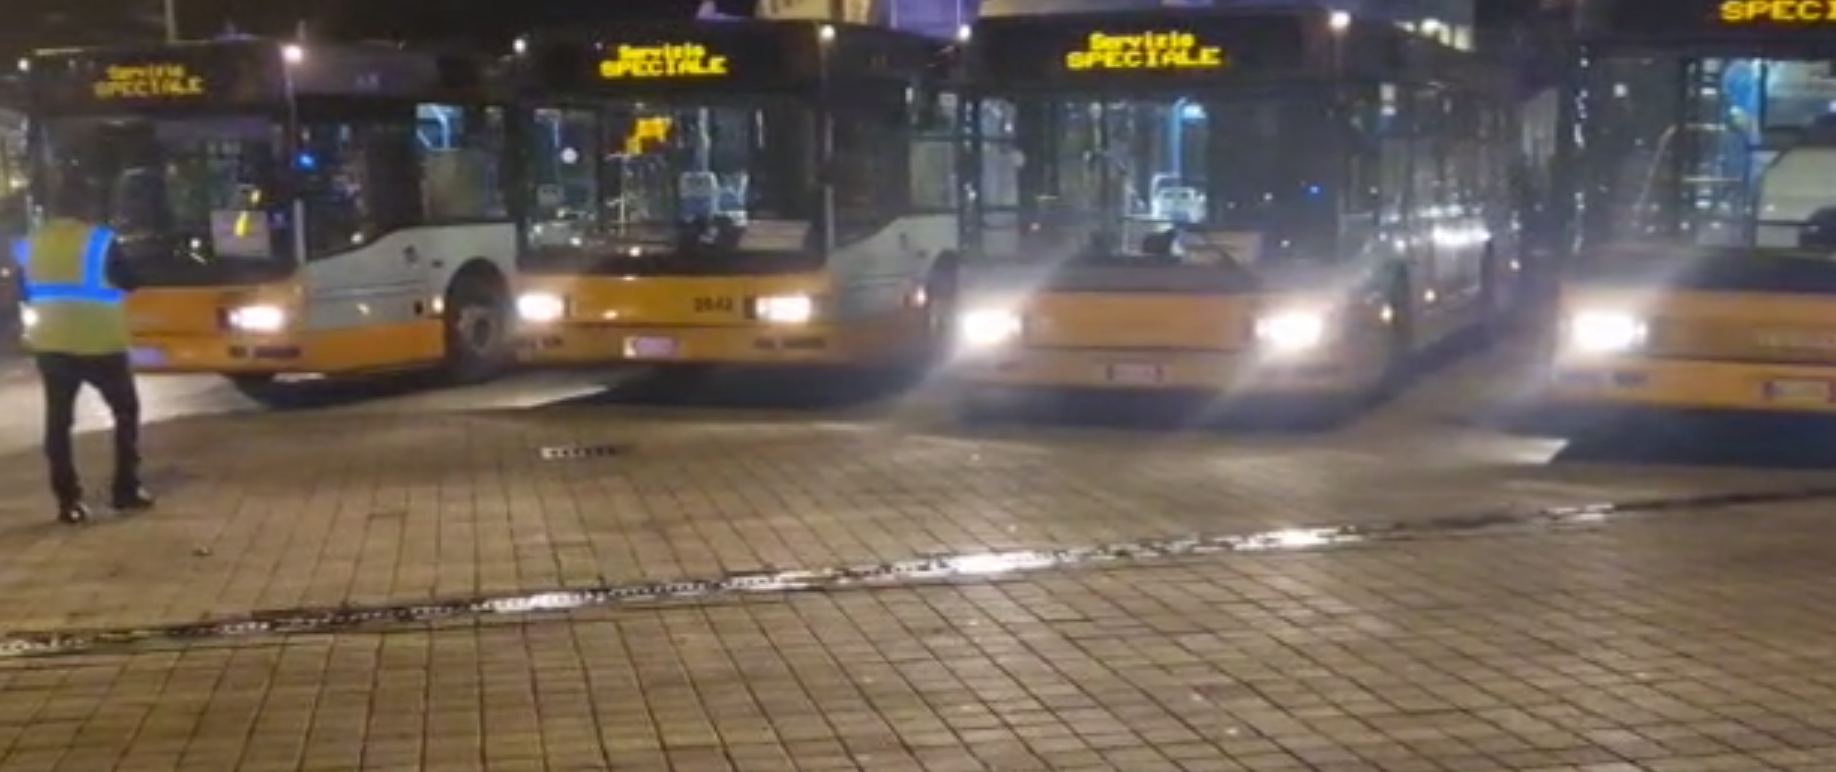 Genova, tensione all'uscita dallo stadio: oggetti contro i bus con gli spezzini a bordo, ferito un tifoso della Samp